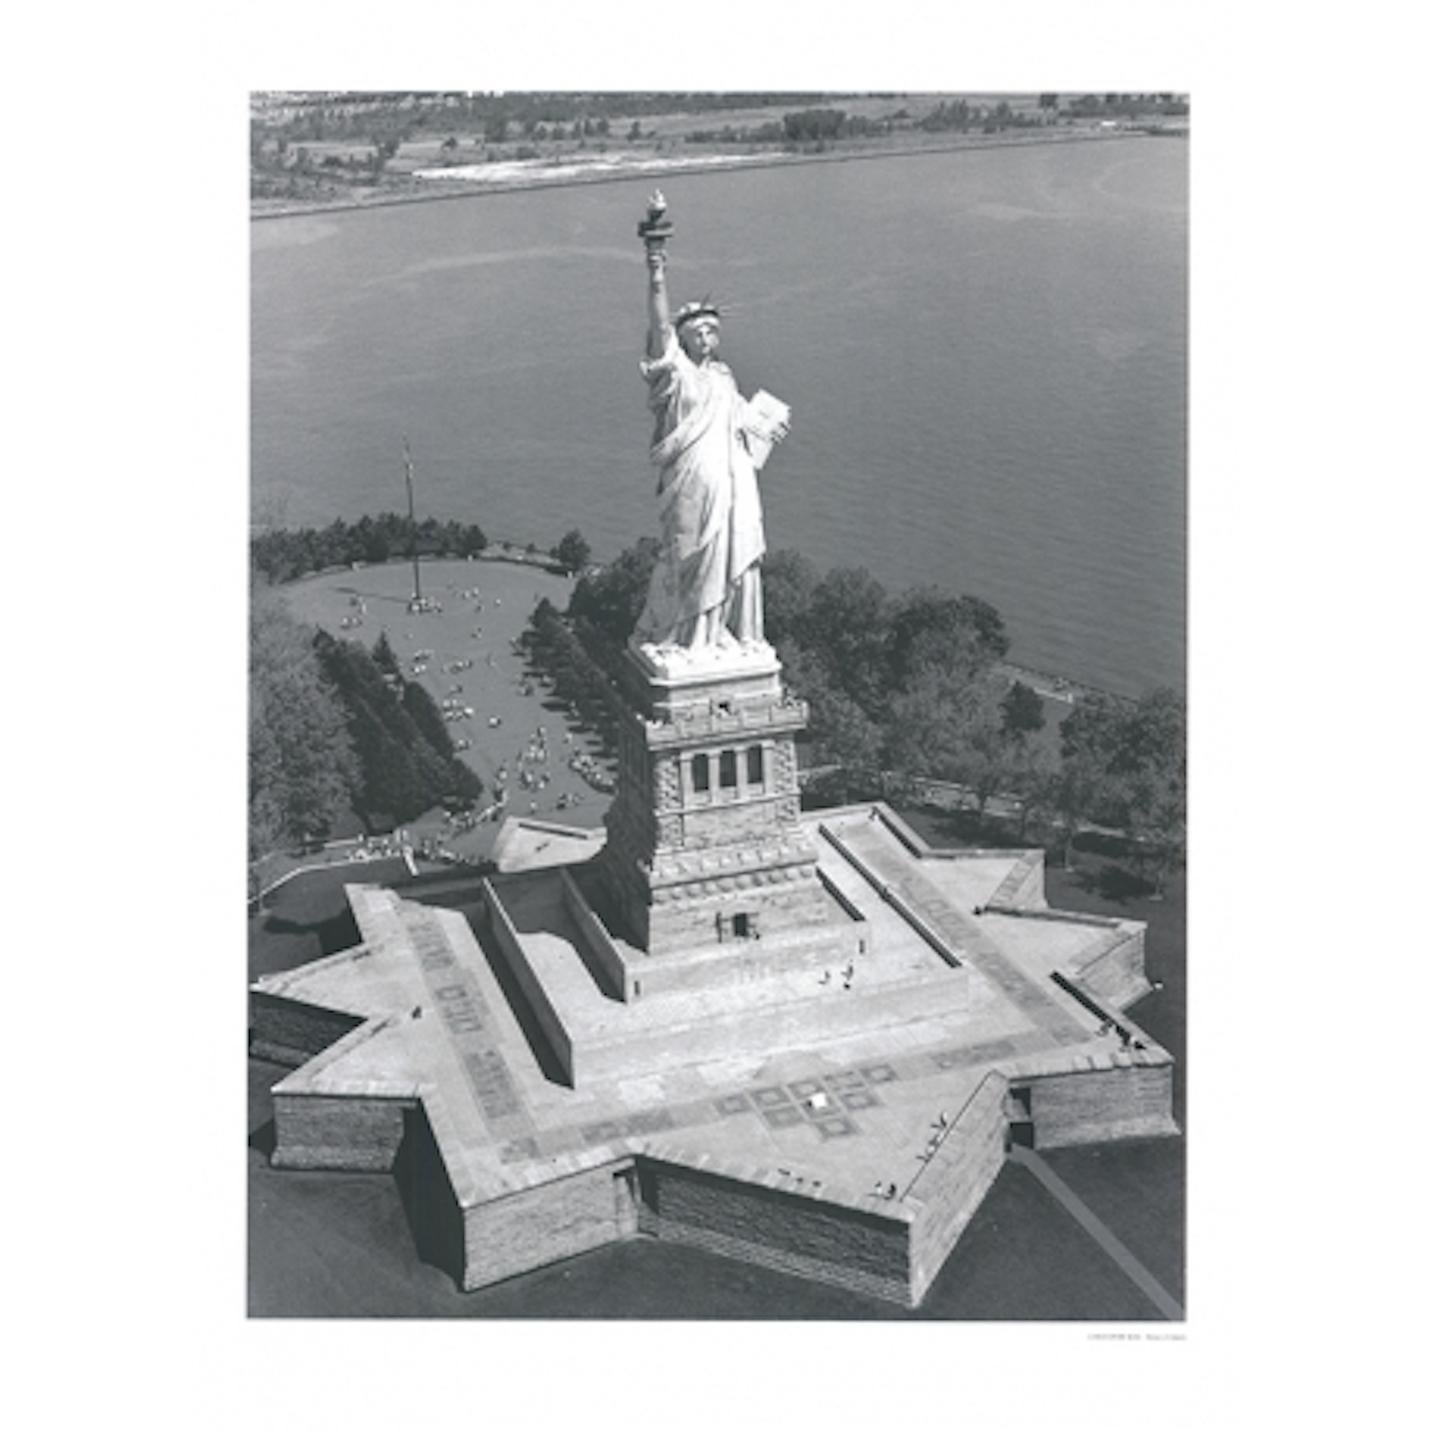 Photographie en noir et blanc qui met en valeur la monumentalité de la Liberté éclairant le monde, la sculpture la plus célèbre des États-Unis est montrée dans le cliché comme une combinaison dynamique de la géométrie du piédestal et de l'organicité